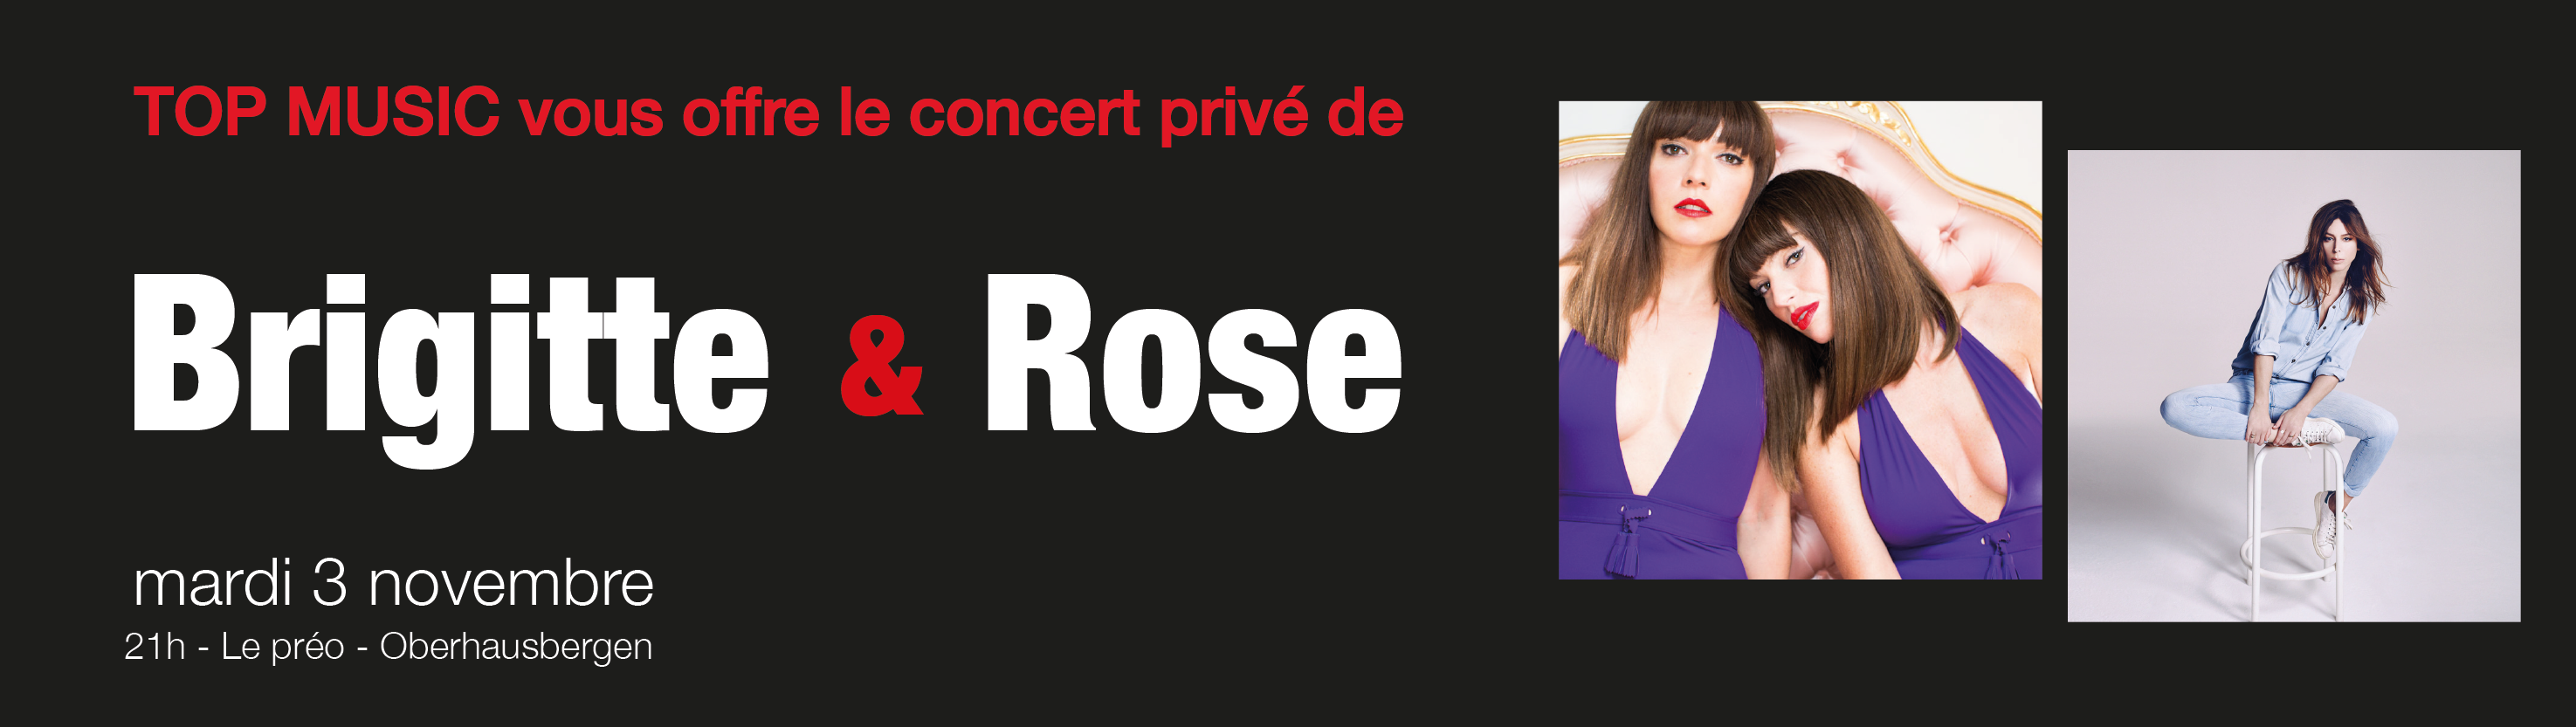 Concert privé Top Music le 3 novembre à Strasbourg